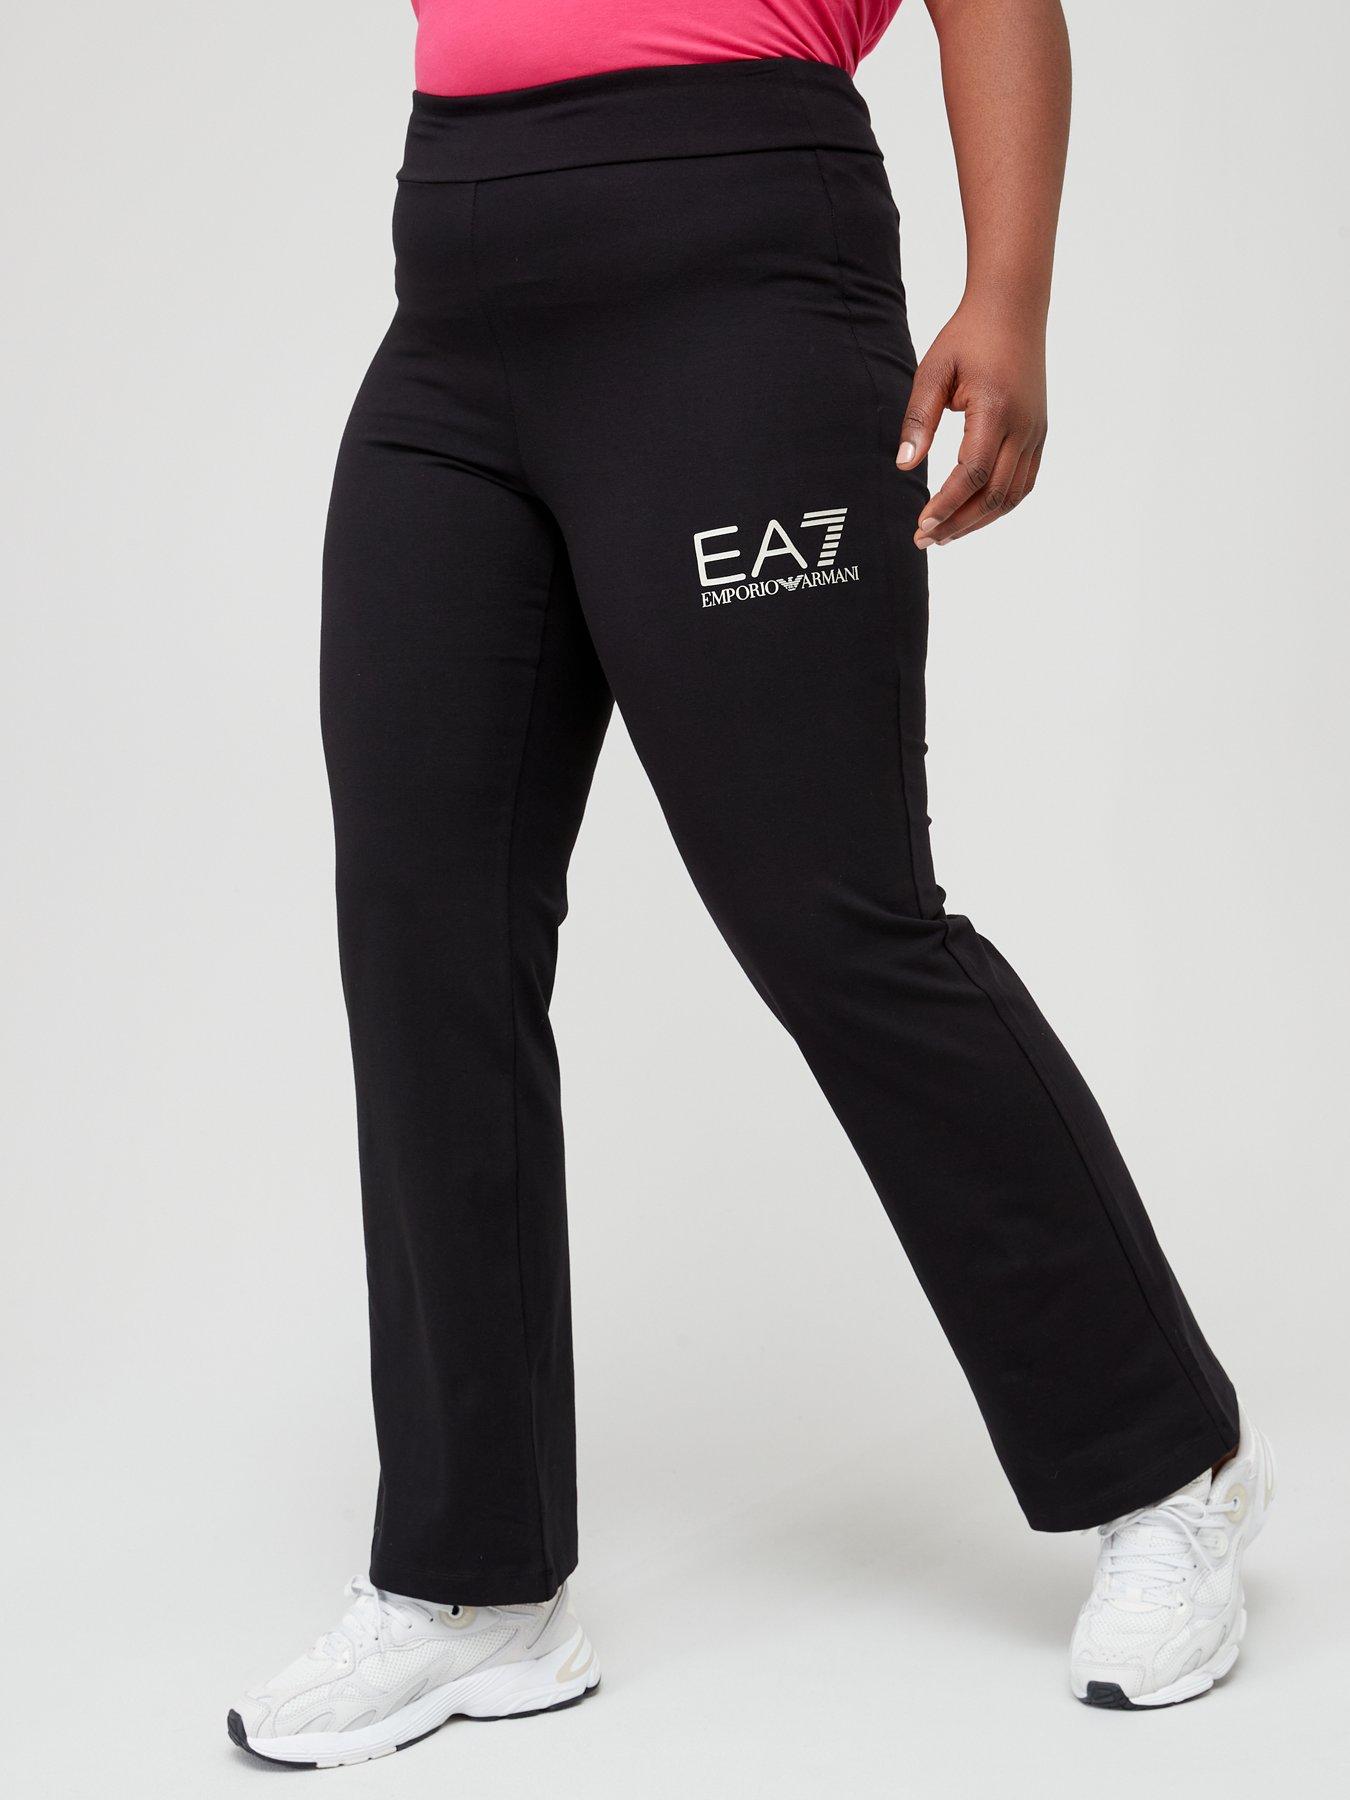 Emporio Armani EA7 black stretch workout leggings w white stripe, ladies'  size M